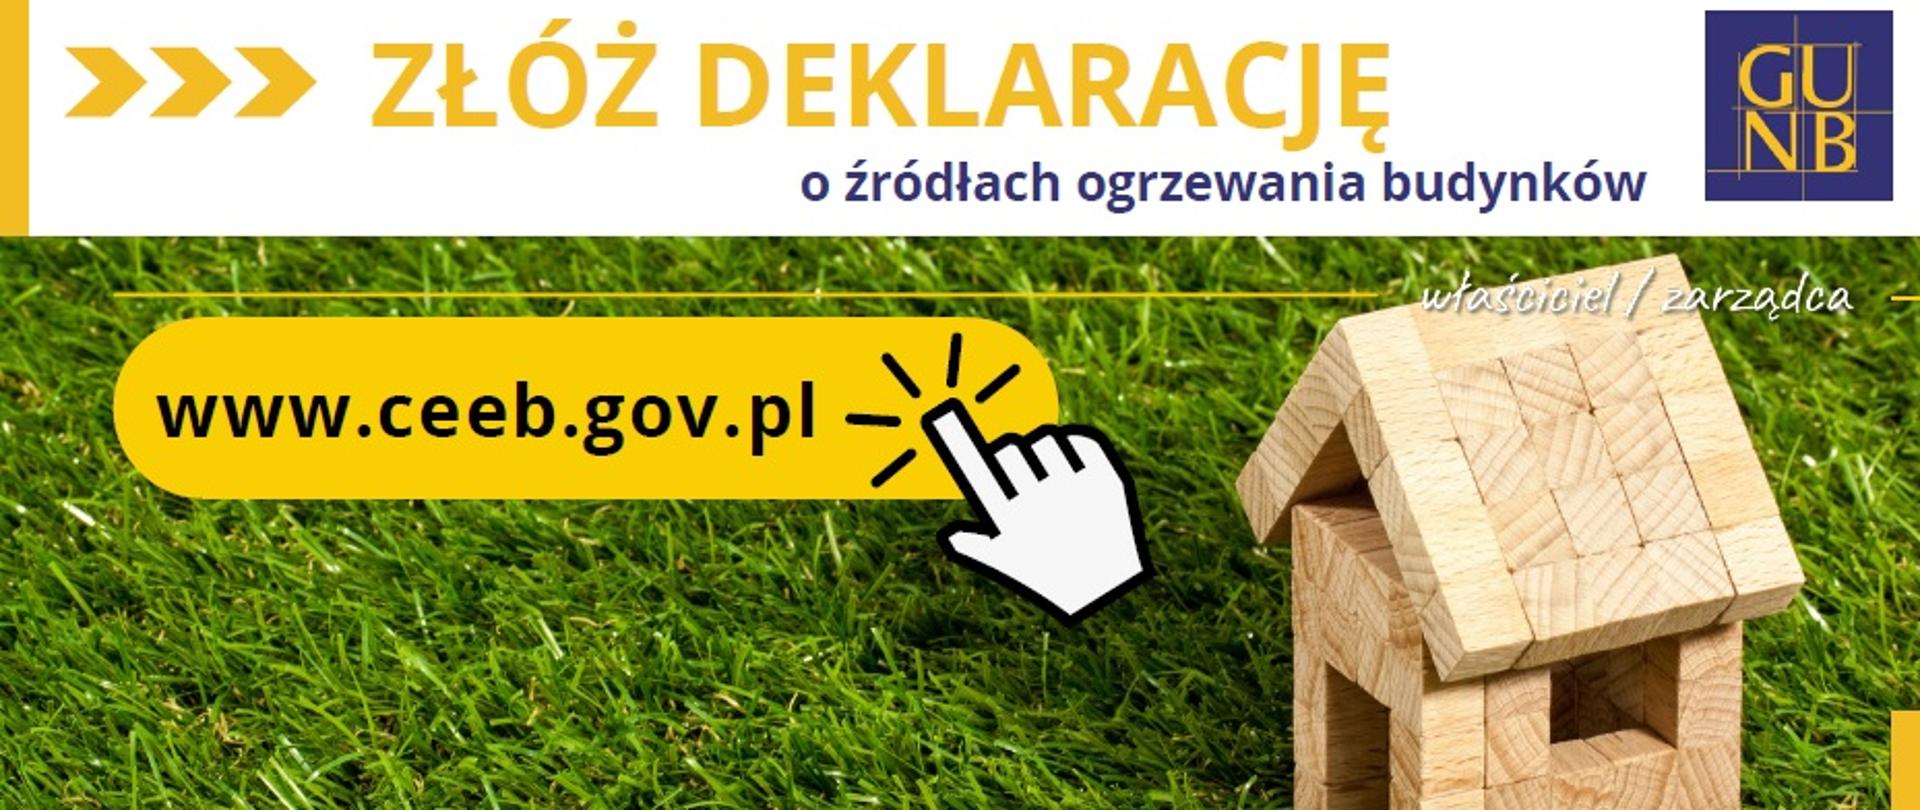 Złóż deklarację o źródłach ogrzewania budynków www.ceeb.gov.pl. Zdjęcie domku z drewnianych klocków stojący na trawie